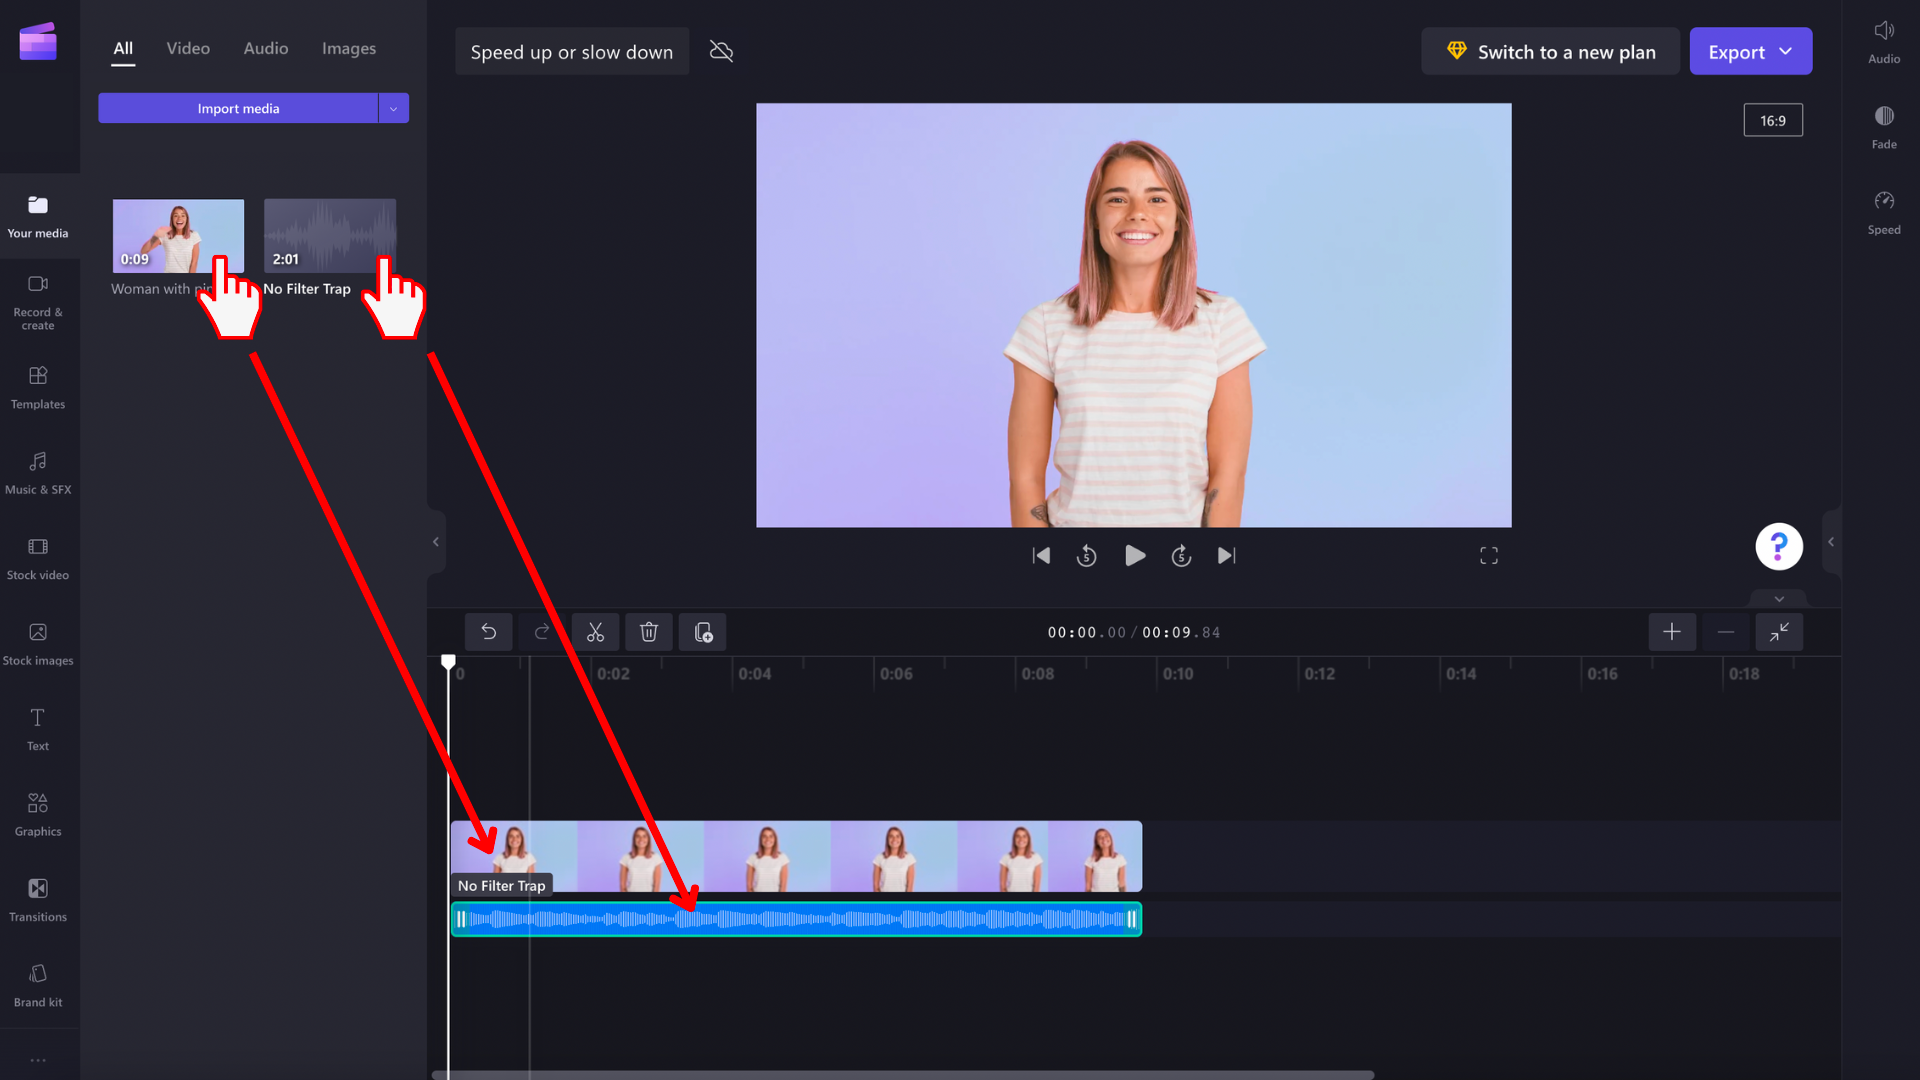 O imagine cu un utilizator adăugând un videoclip și muzică în cronologie.